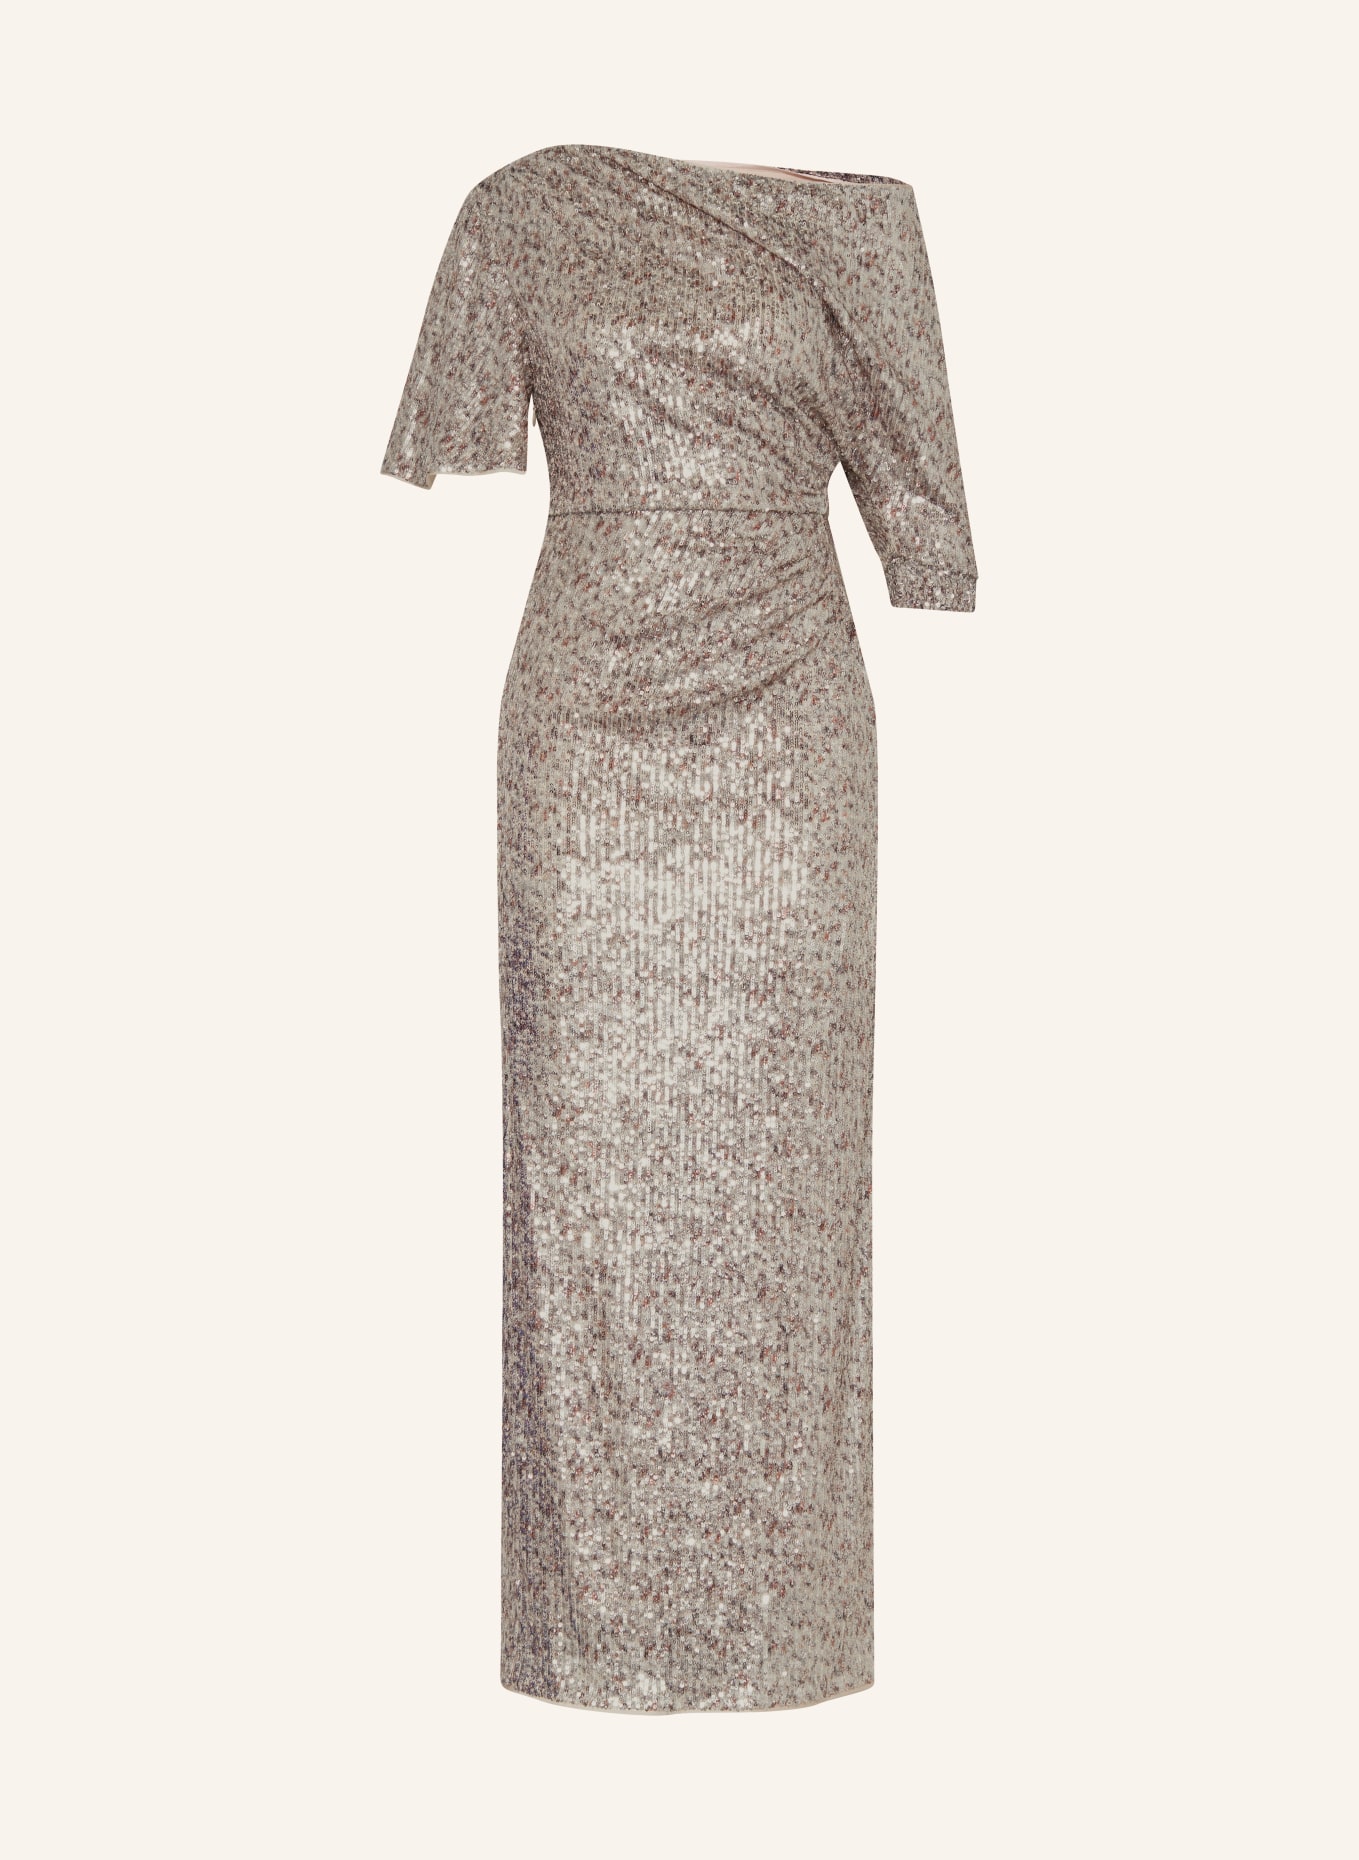 DIANE VON FURSTENBERG Abendkleid WITTROCK mit Pailletten, Farbe: SILBER (Bild 1)